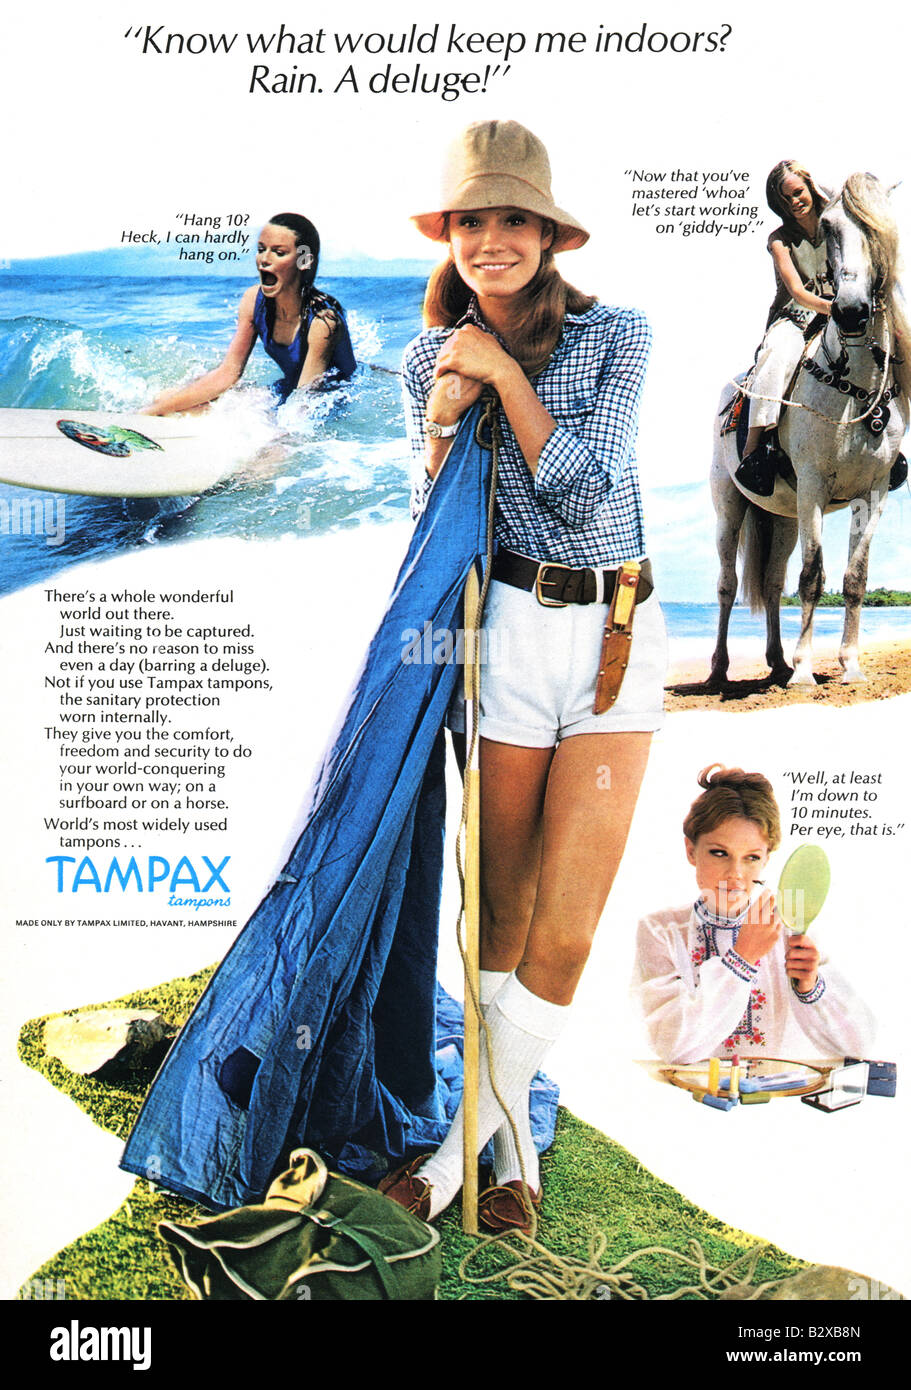 Tampax advert Banque de photographies et d'images à haute résolution - Alamy